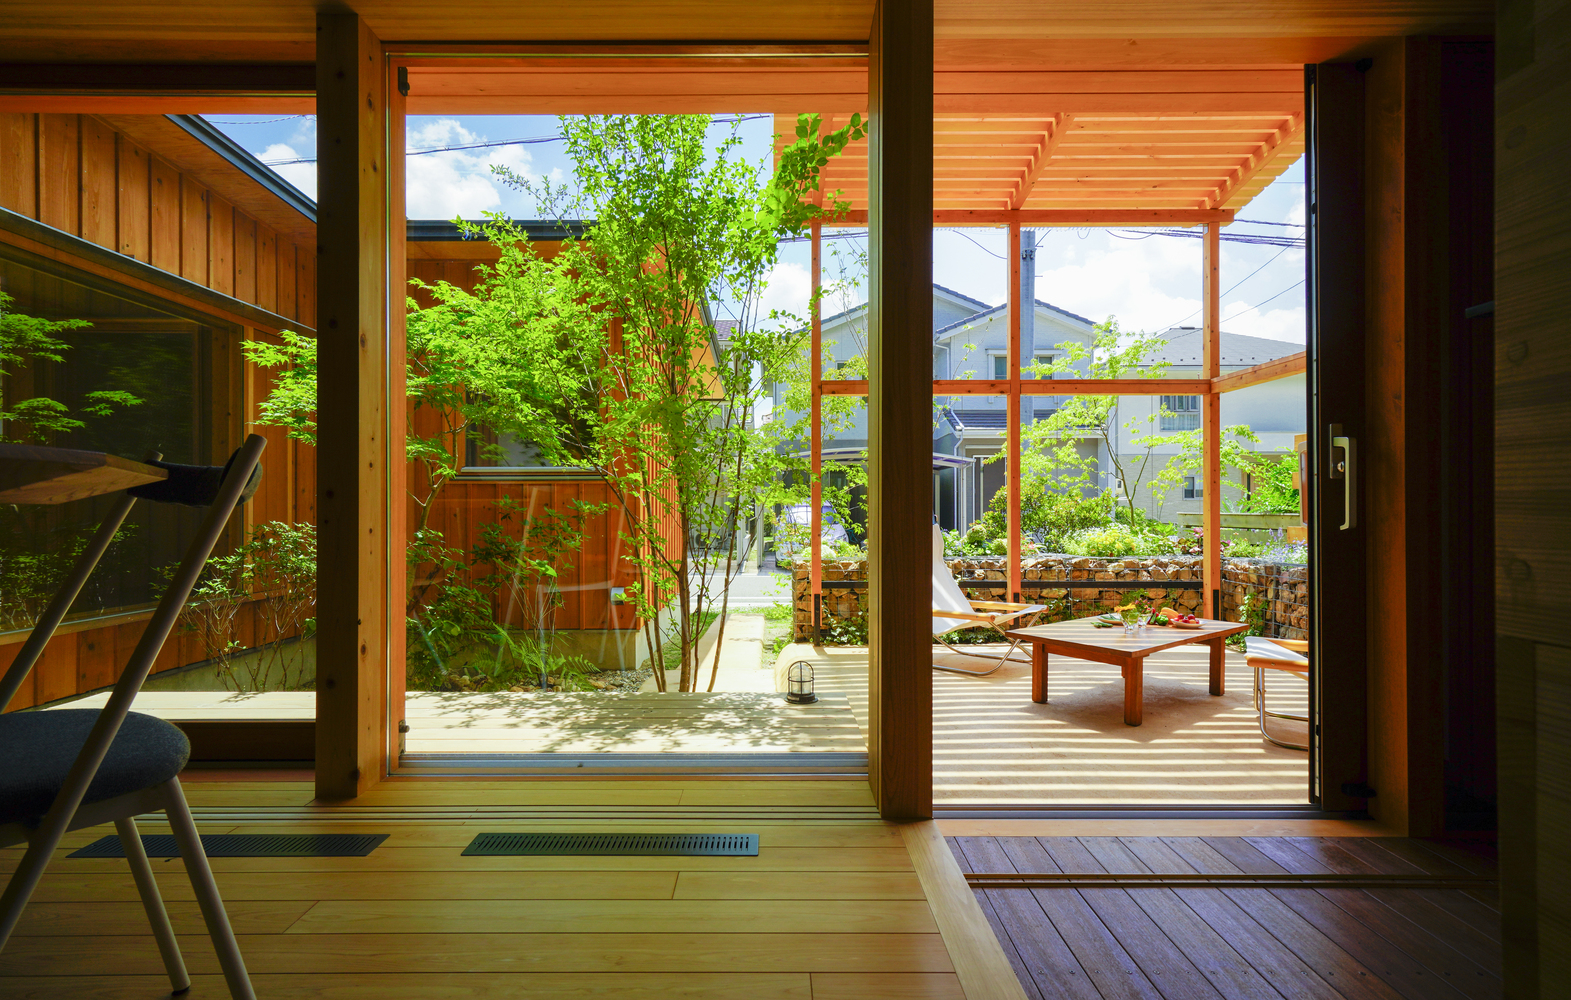 Kết cấu ngôi nhà được hoàn thiện bằng chất liệu gỗ chủ đạo, tông màu ấm áp và hài hòa với cảnh quan sân vườn.